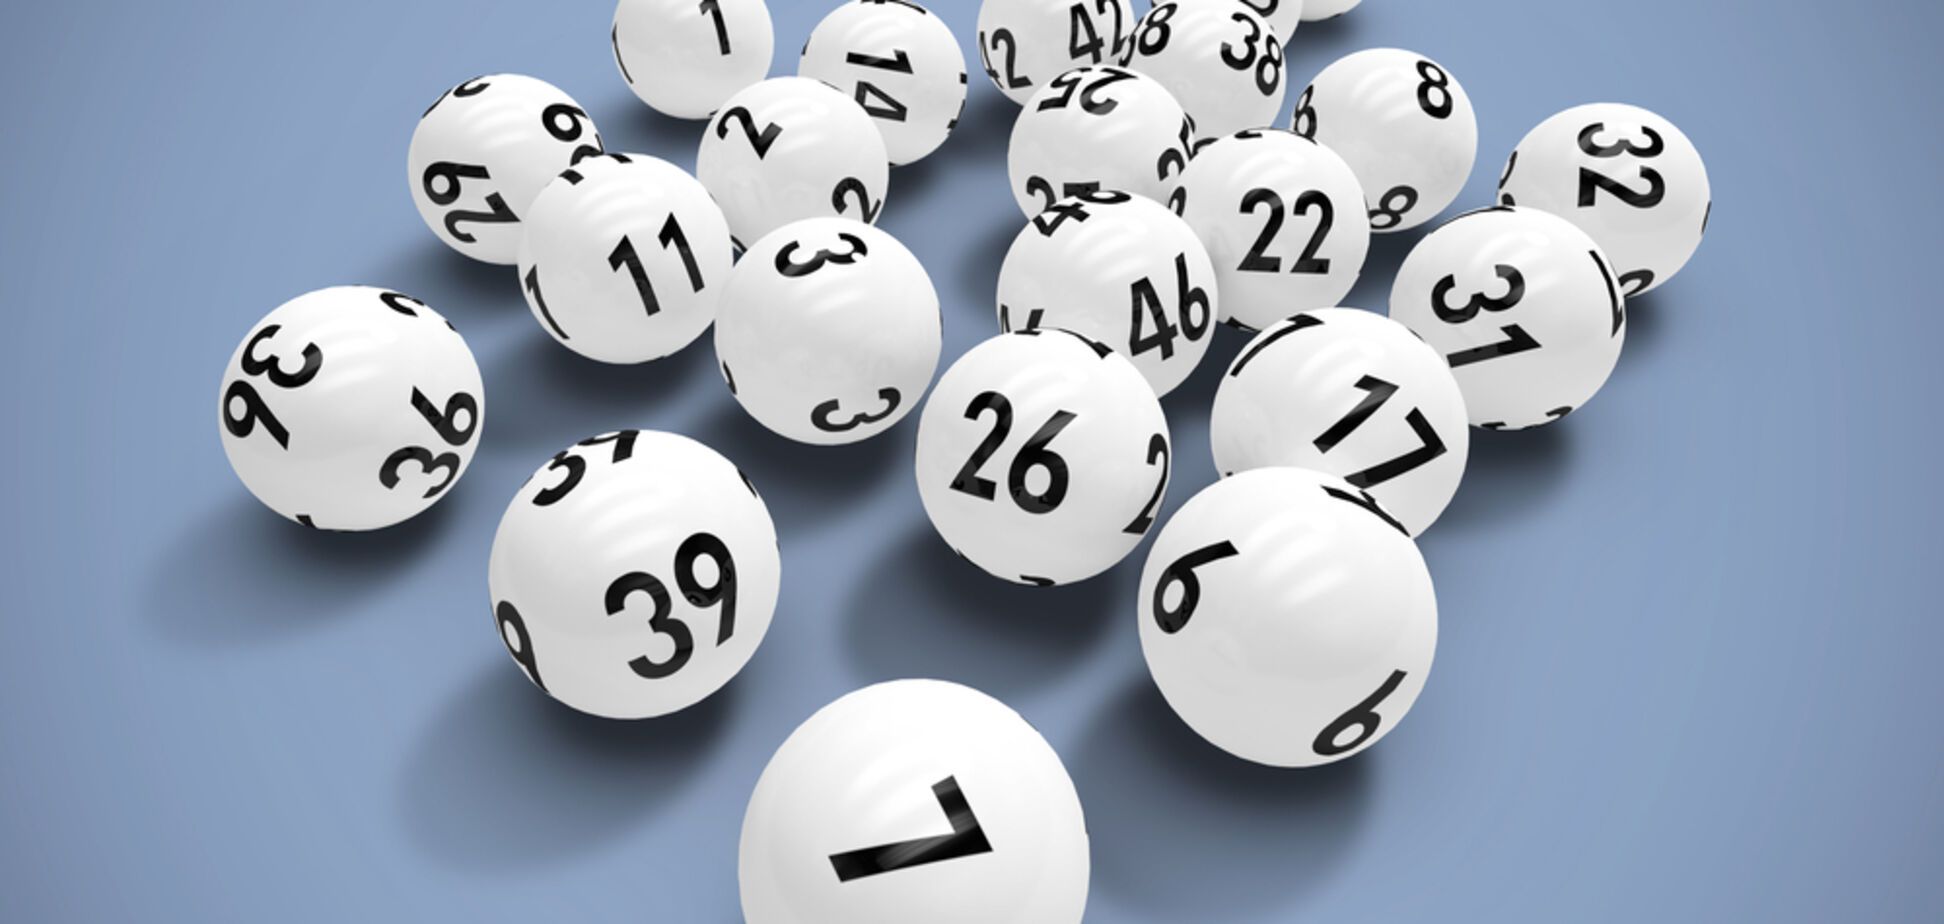 В лотерее Powerball разыграют 290 млн долларов: как купить билет из Украины